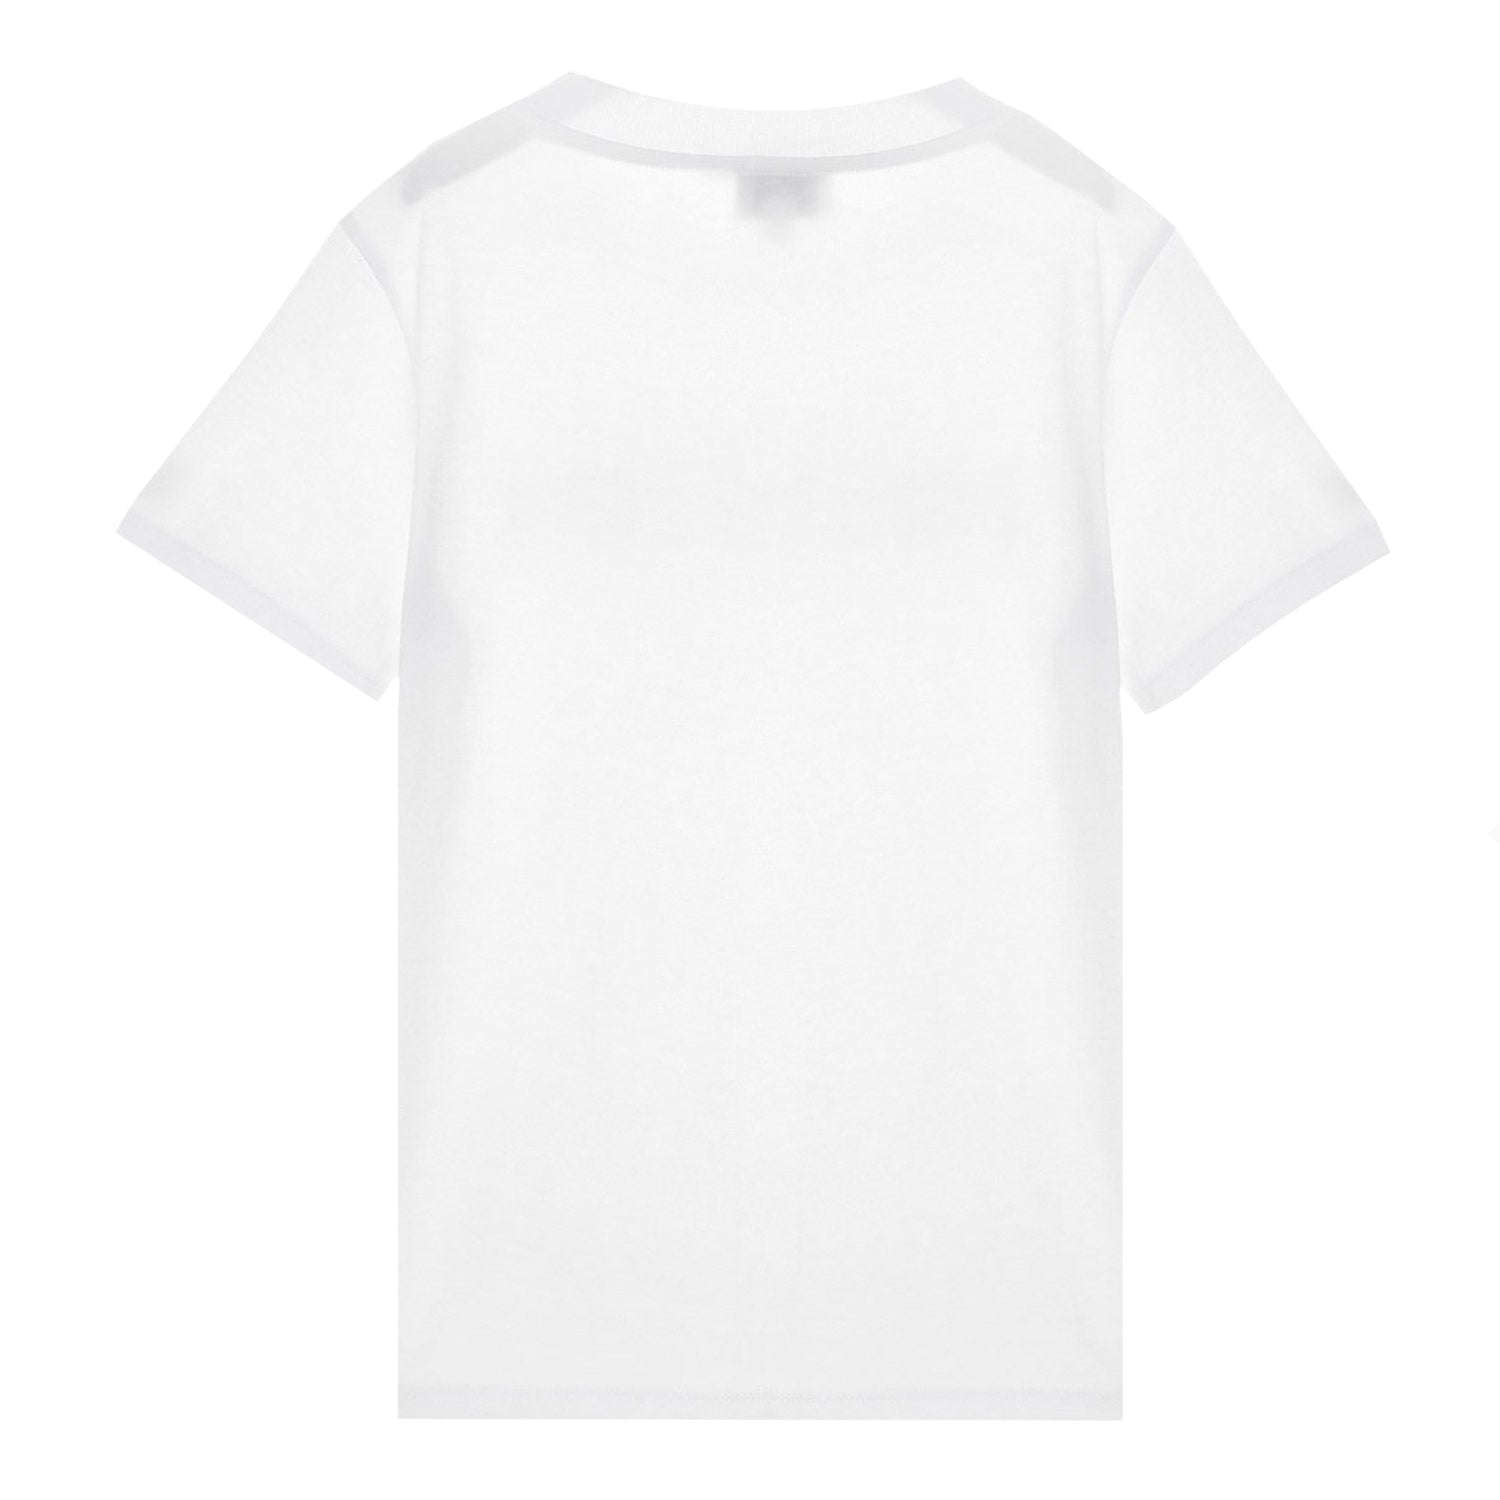 Kenzo Girls Tiger Logo T-shirt White 10Y Pink